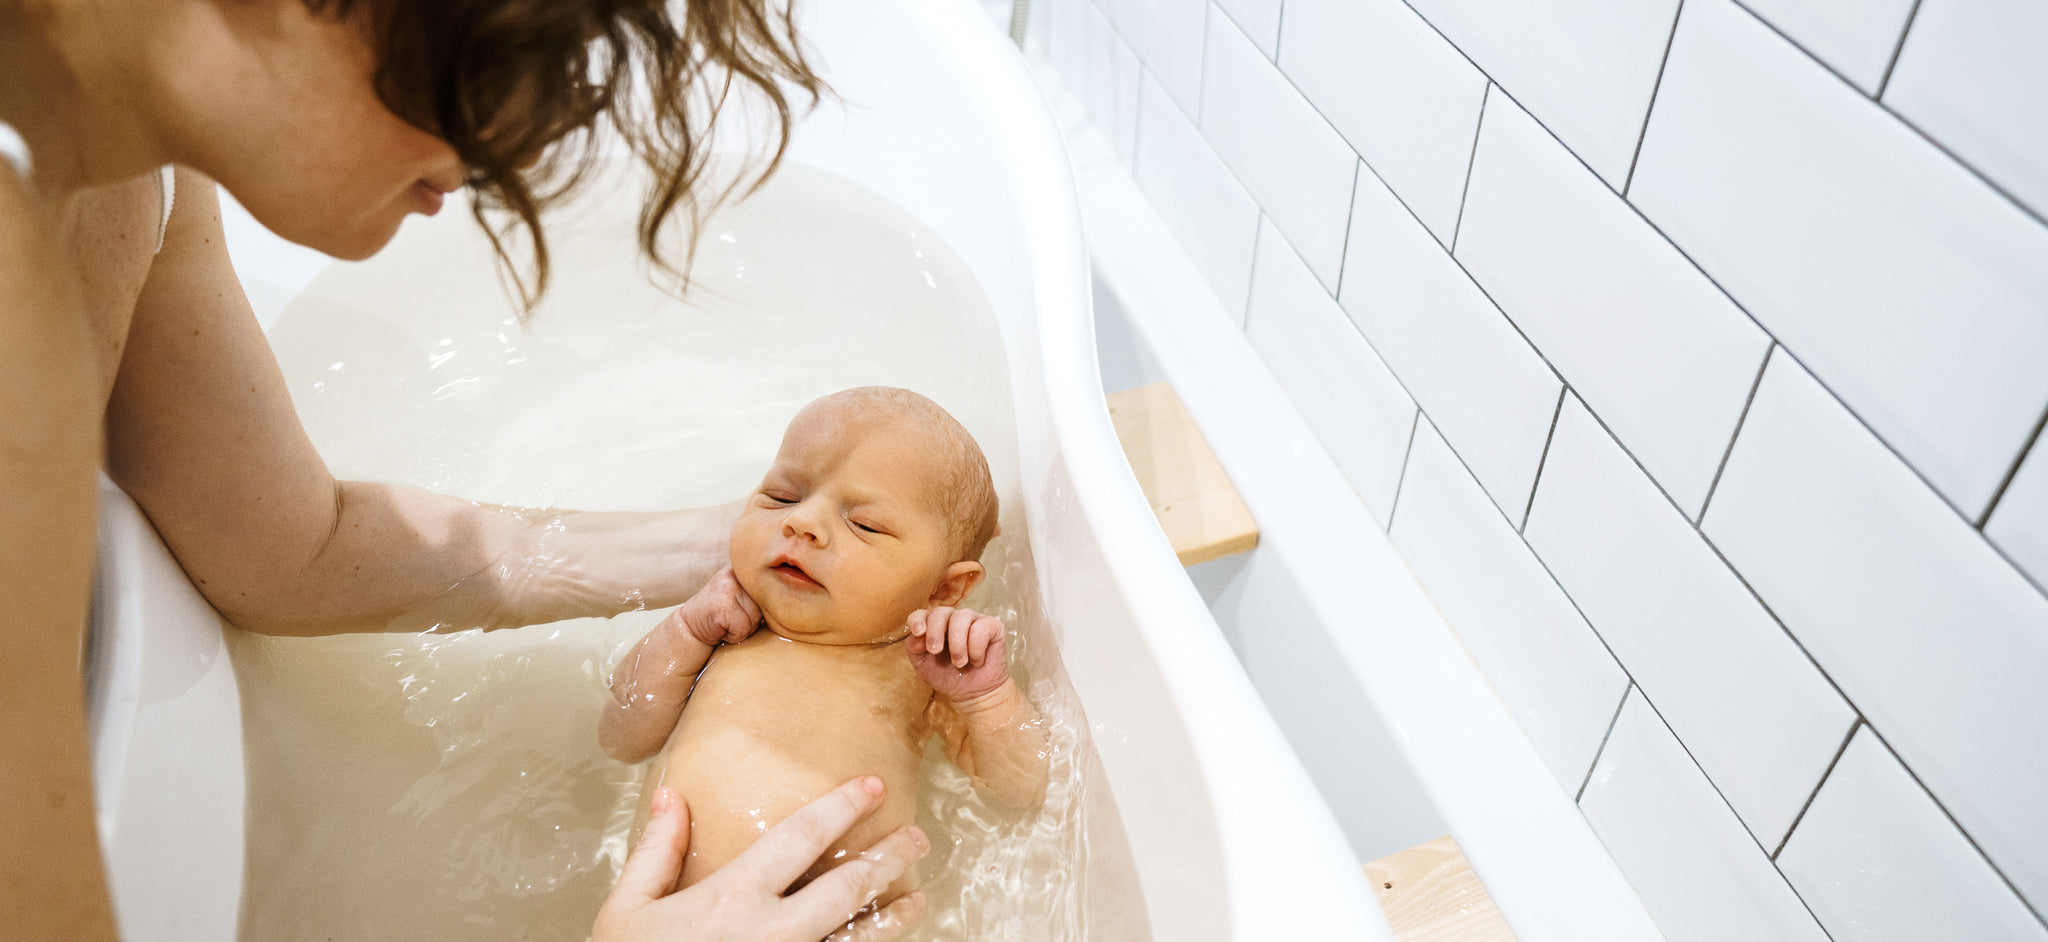 Зашел к маме в ванную. Мама купает ребенка в ванной. Дети моются в ванной. Мать в ванне. Мама моется с ребенком в ванной.